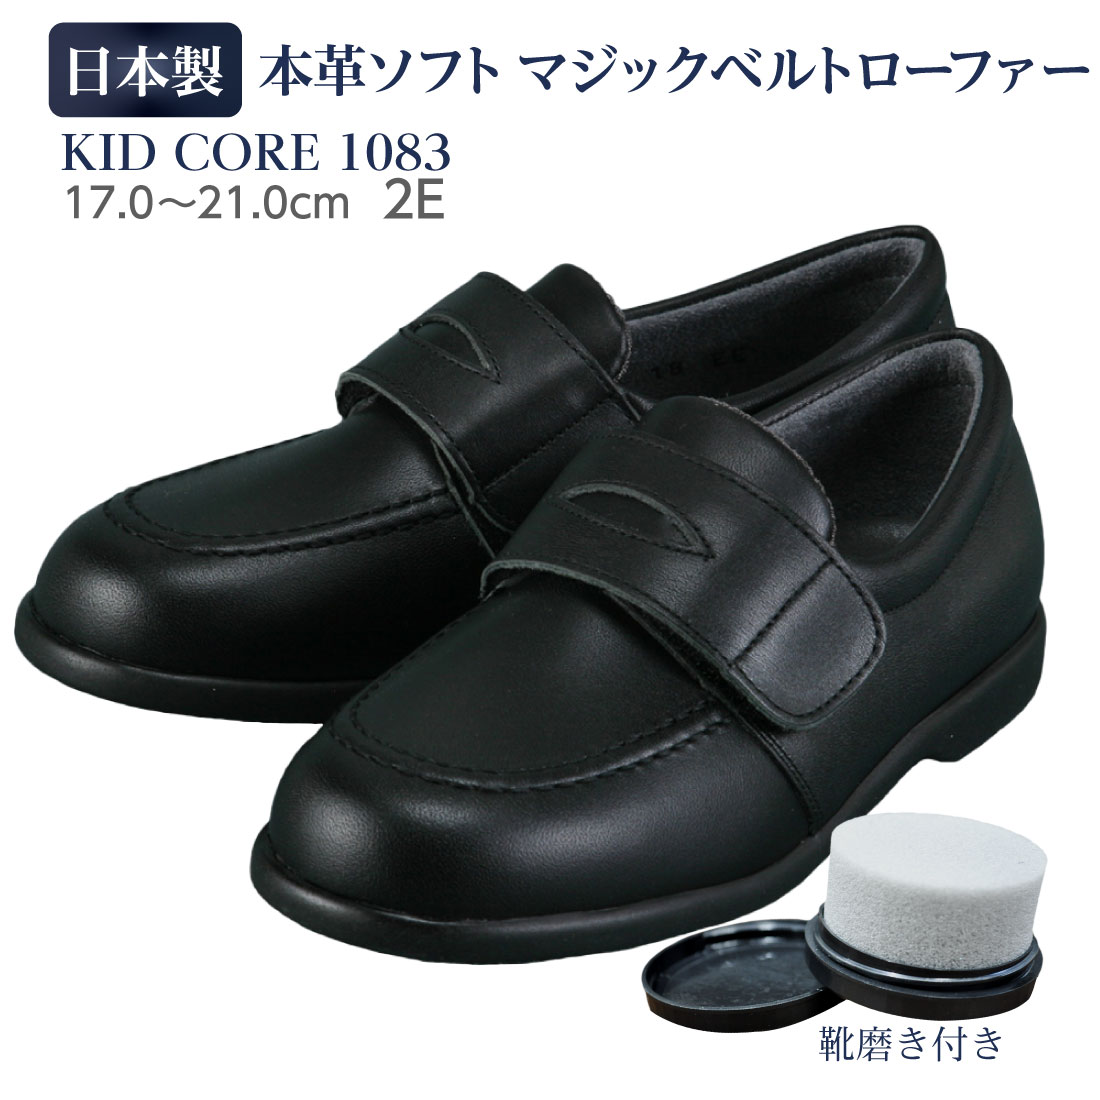 百貨店取扱い 正規品 KID CORE キッドコア 靴磨きセット 2E 日本製本革ソフトタイプ マジックベルトローファー靴ズレしにくい靴 失敗しない 通学靴